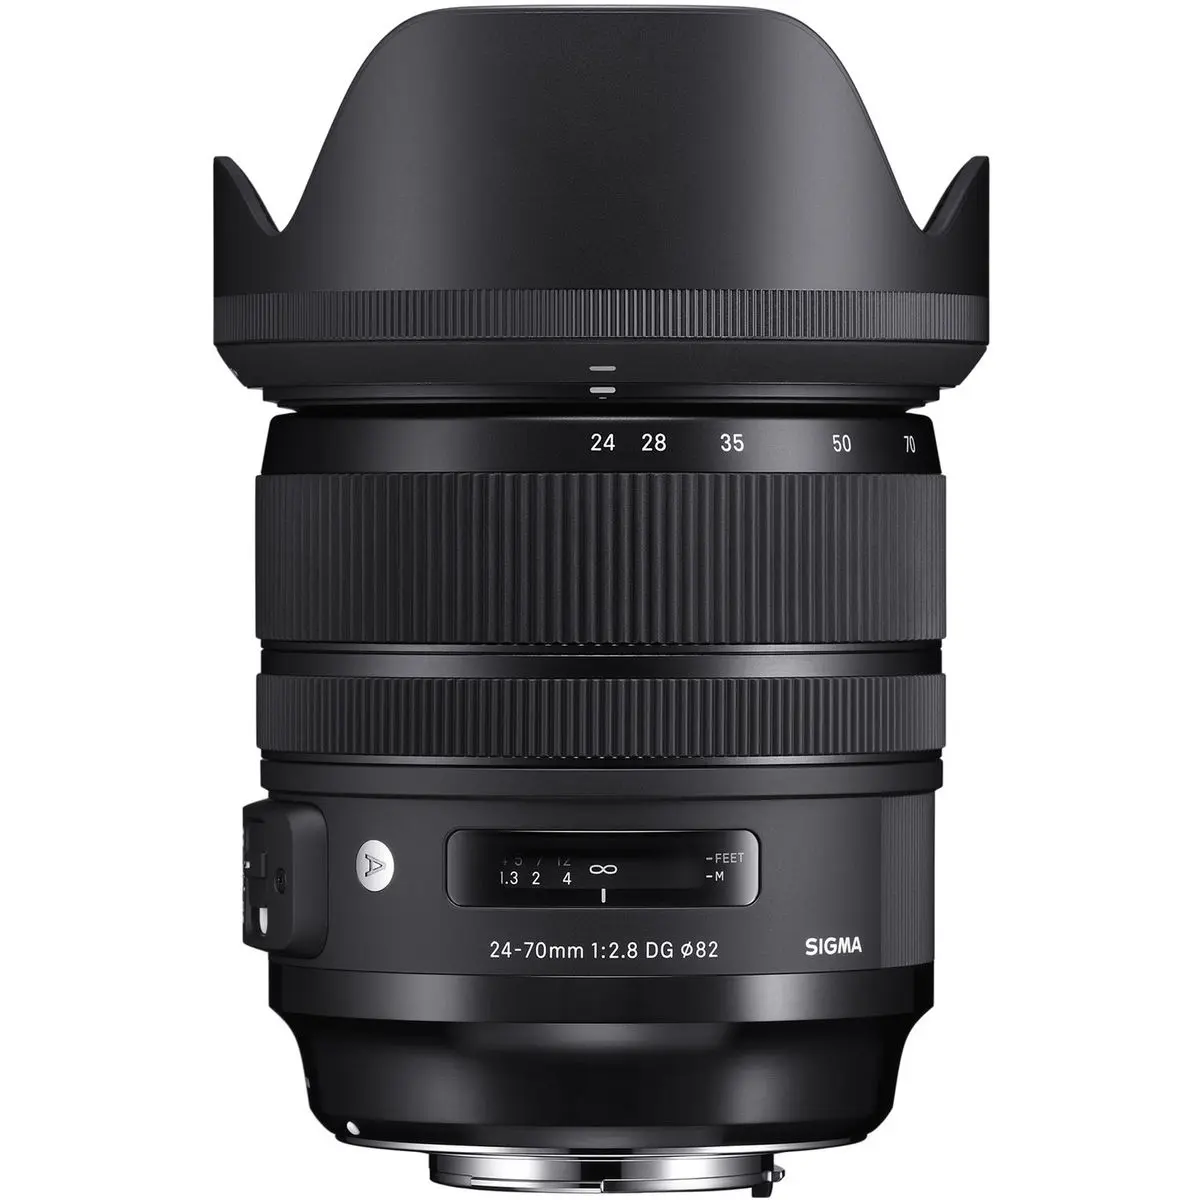 2. Sigma 24-70mm F2.8 DG OS HSM Art for Nikon F Mount Lens